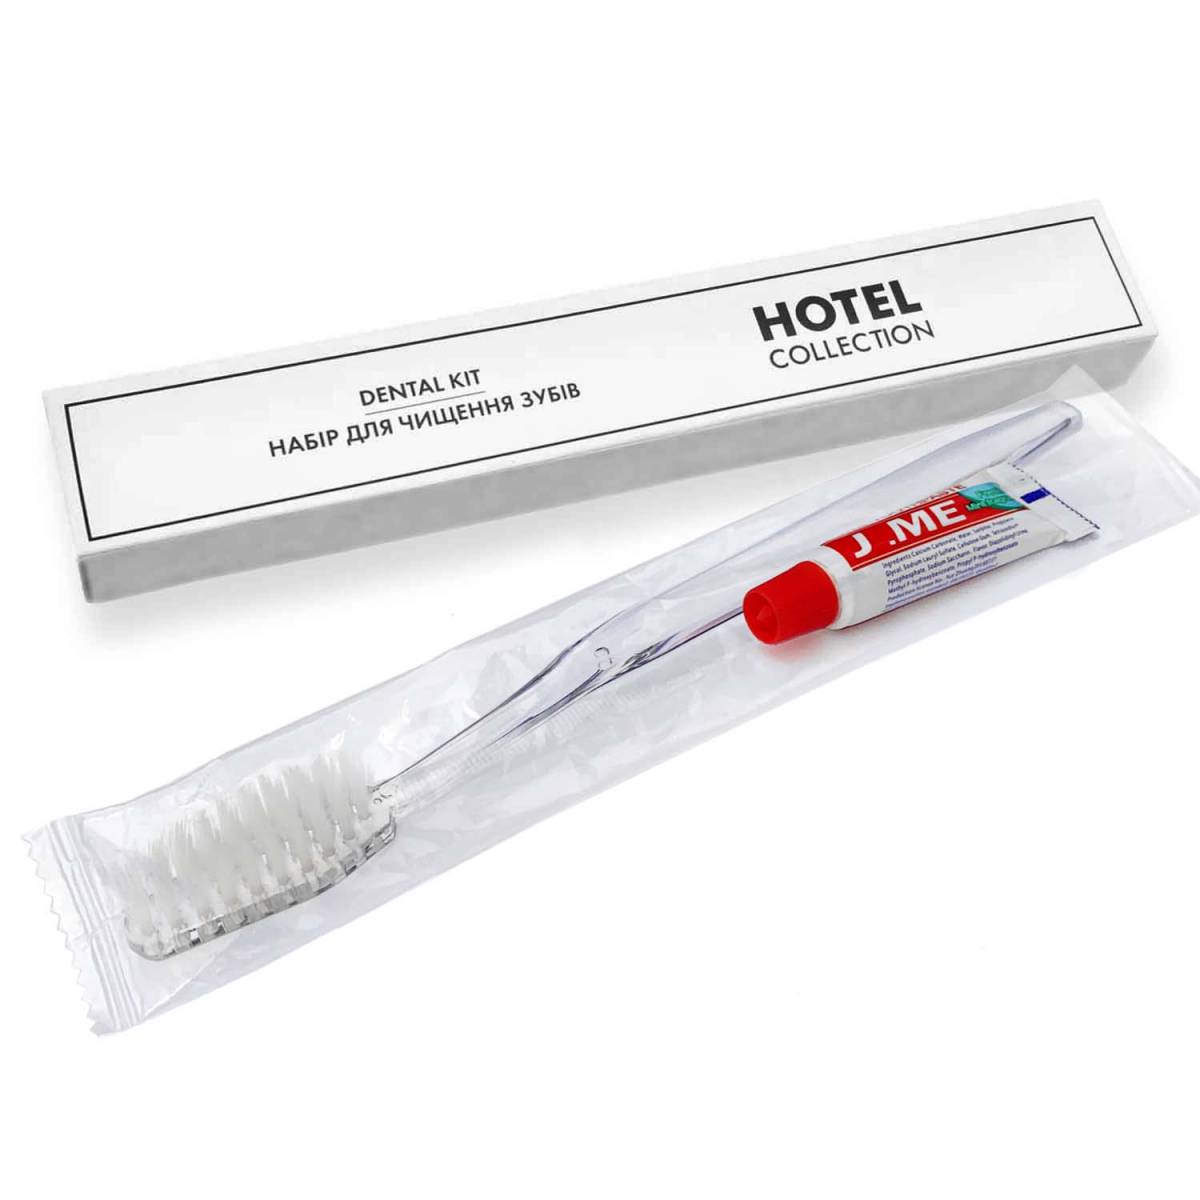 Зубной набор (щетка+паста 5 гр.) в п/е и картонной коробочке "HOTEL COLLECTION" HC-DK5 HSG